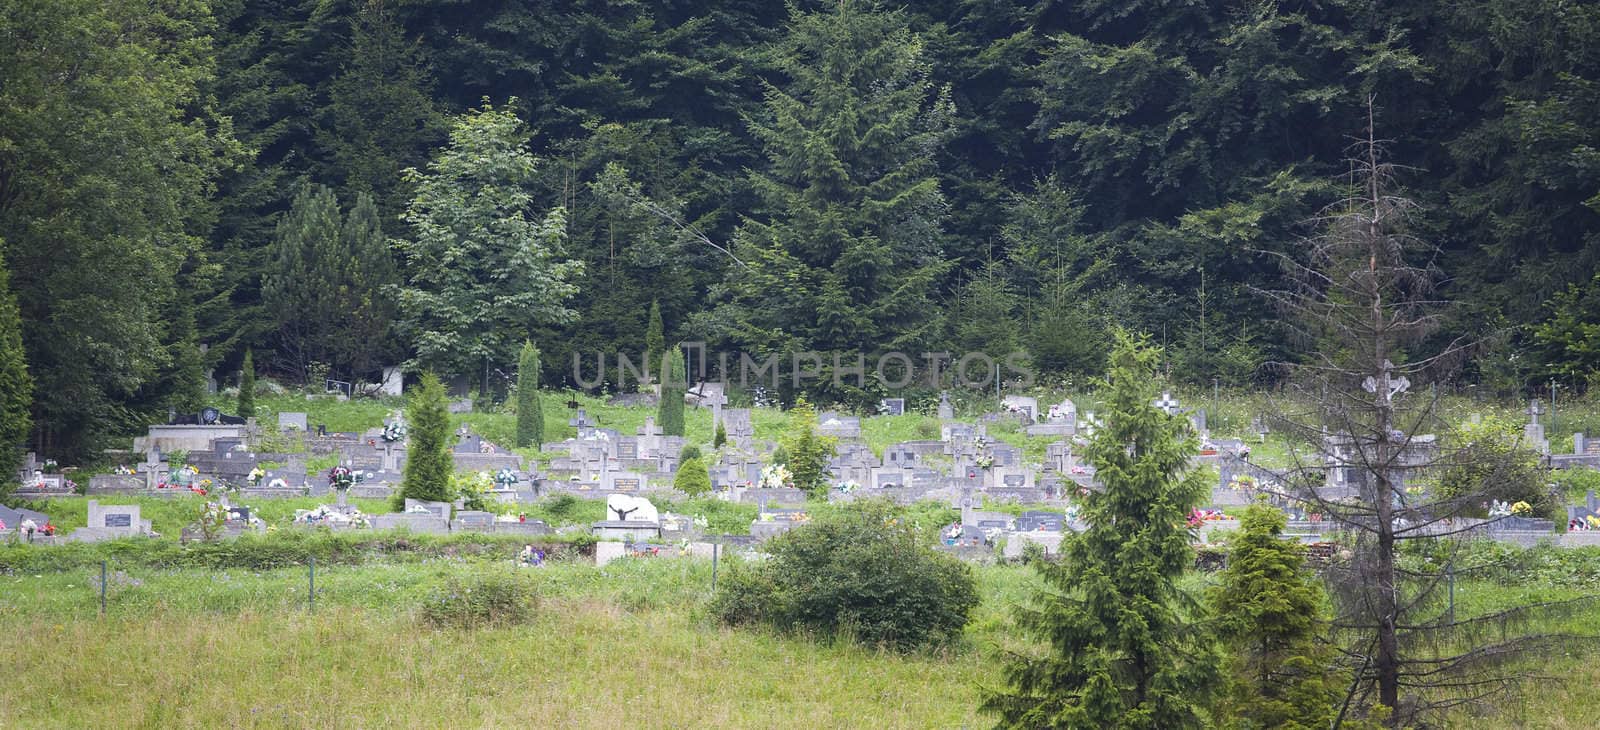 Cemetery in slovakian city Dedinky by furzyk73